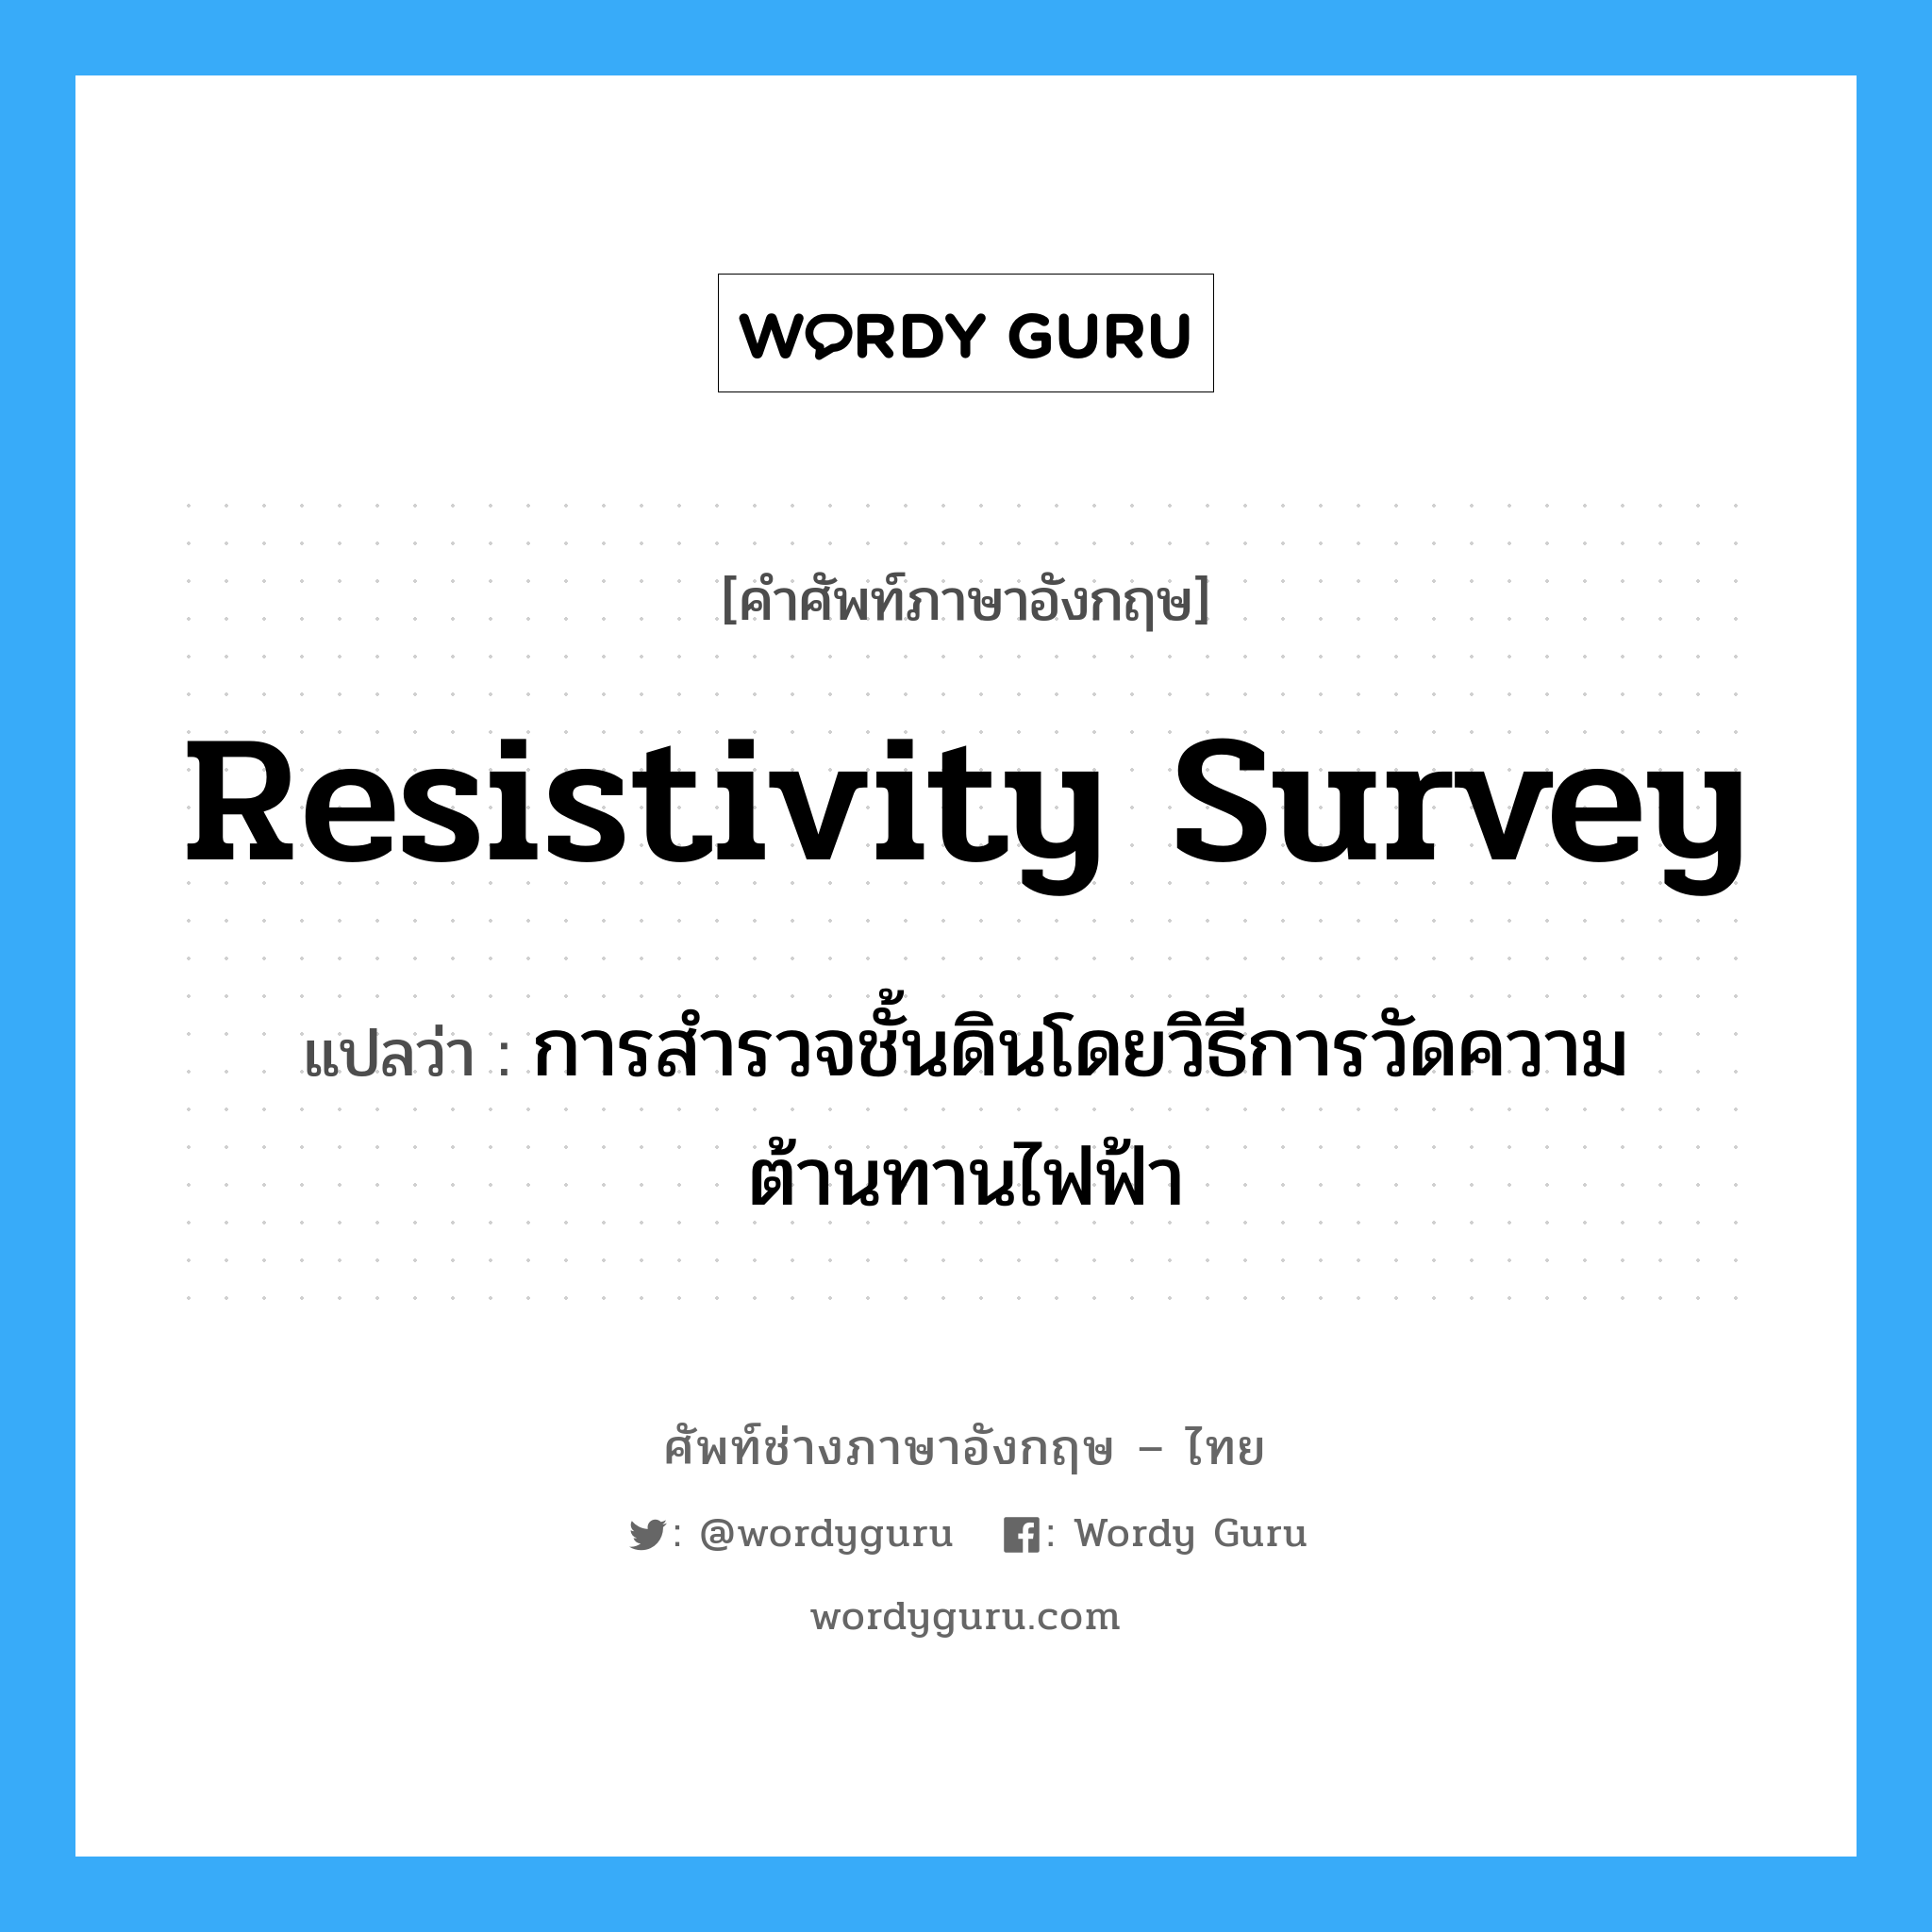 resistivity survey แปลว่า?, คำศัพท์ช่างภาษาอังกฤษ - ไทย resistivity survey คำศัพท์ภาษาอังกฤษ resistivity survey แปลว่า การสำรวจชั้นดินโดยวิธีการวัดความต้านทานไฟฟ้า